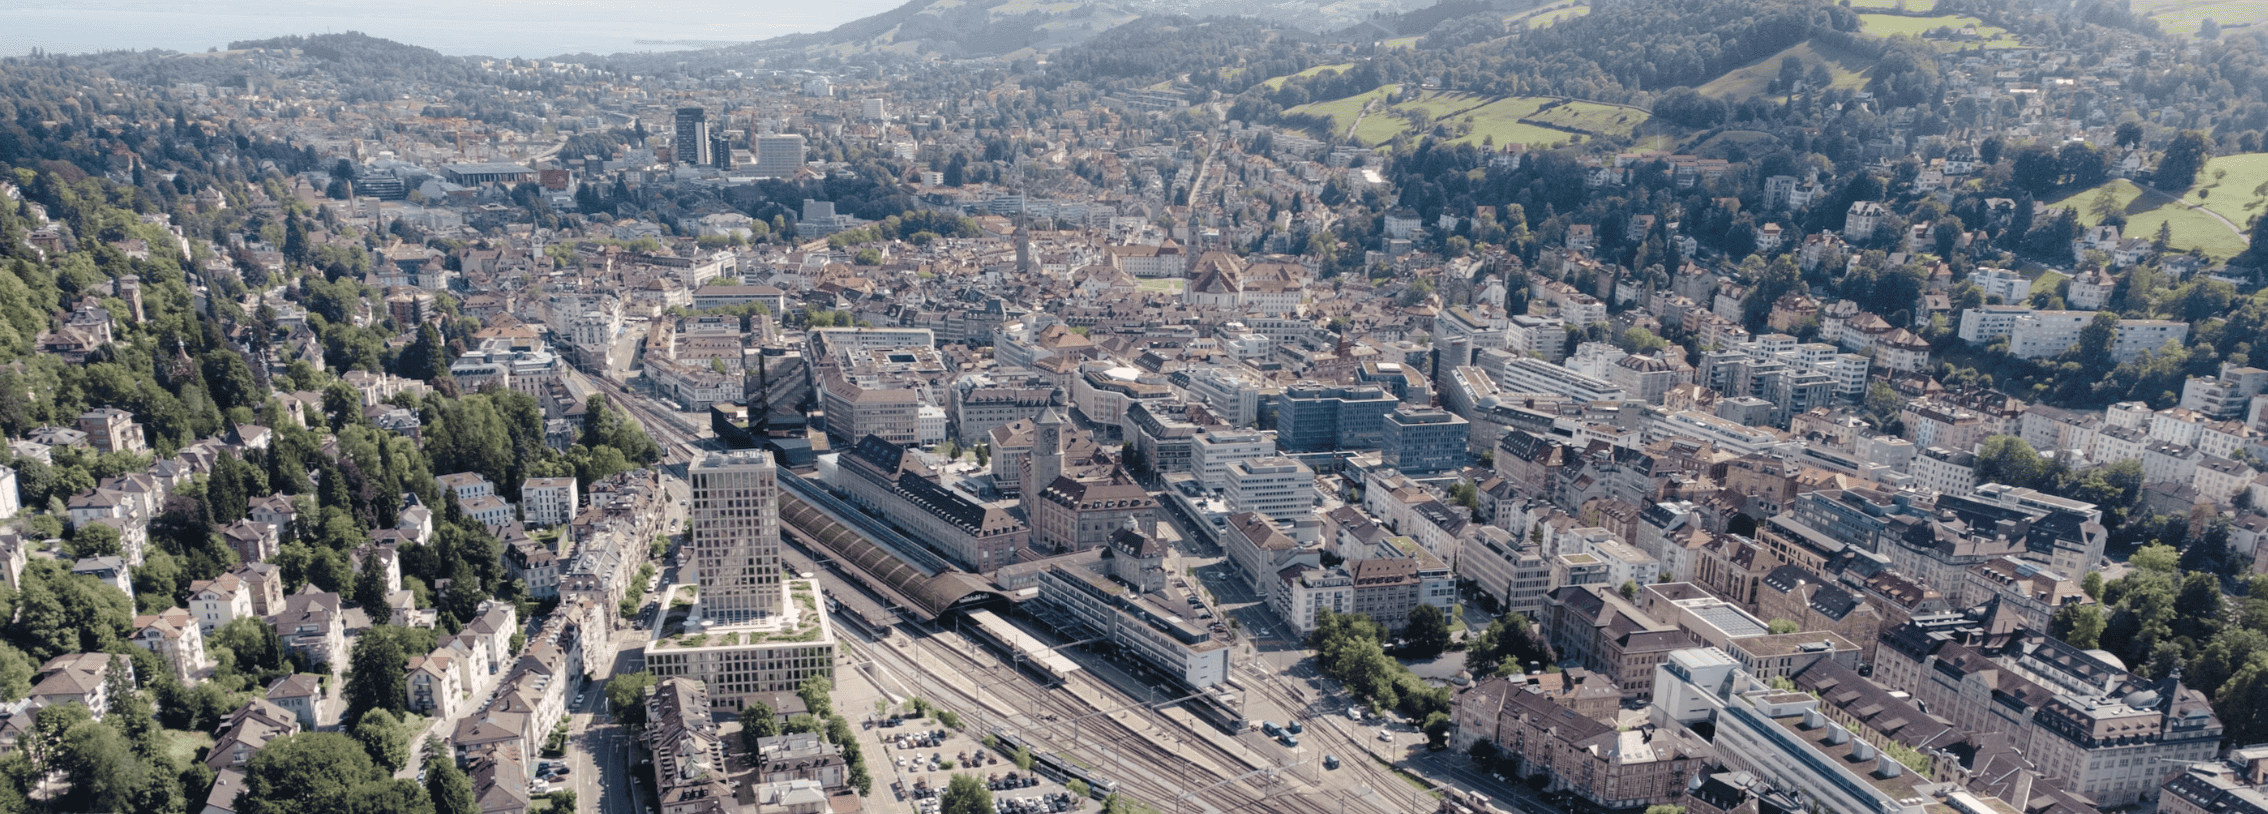 Liste der 3 größten Unternehmen in St. Gallen